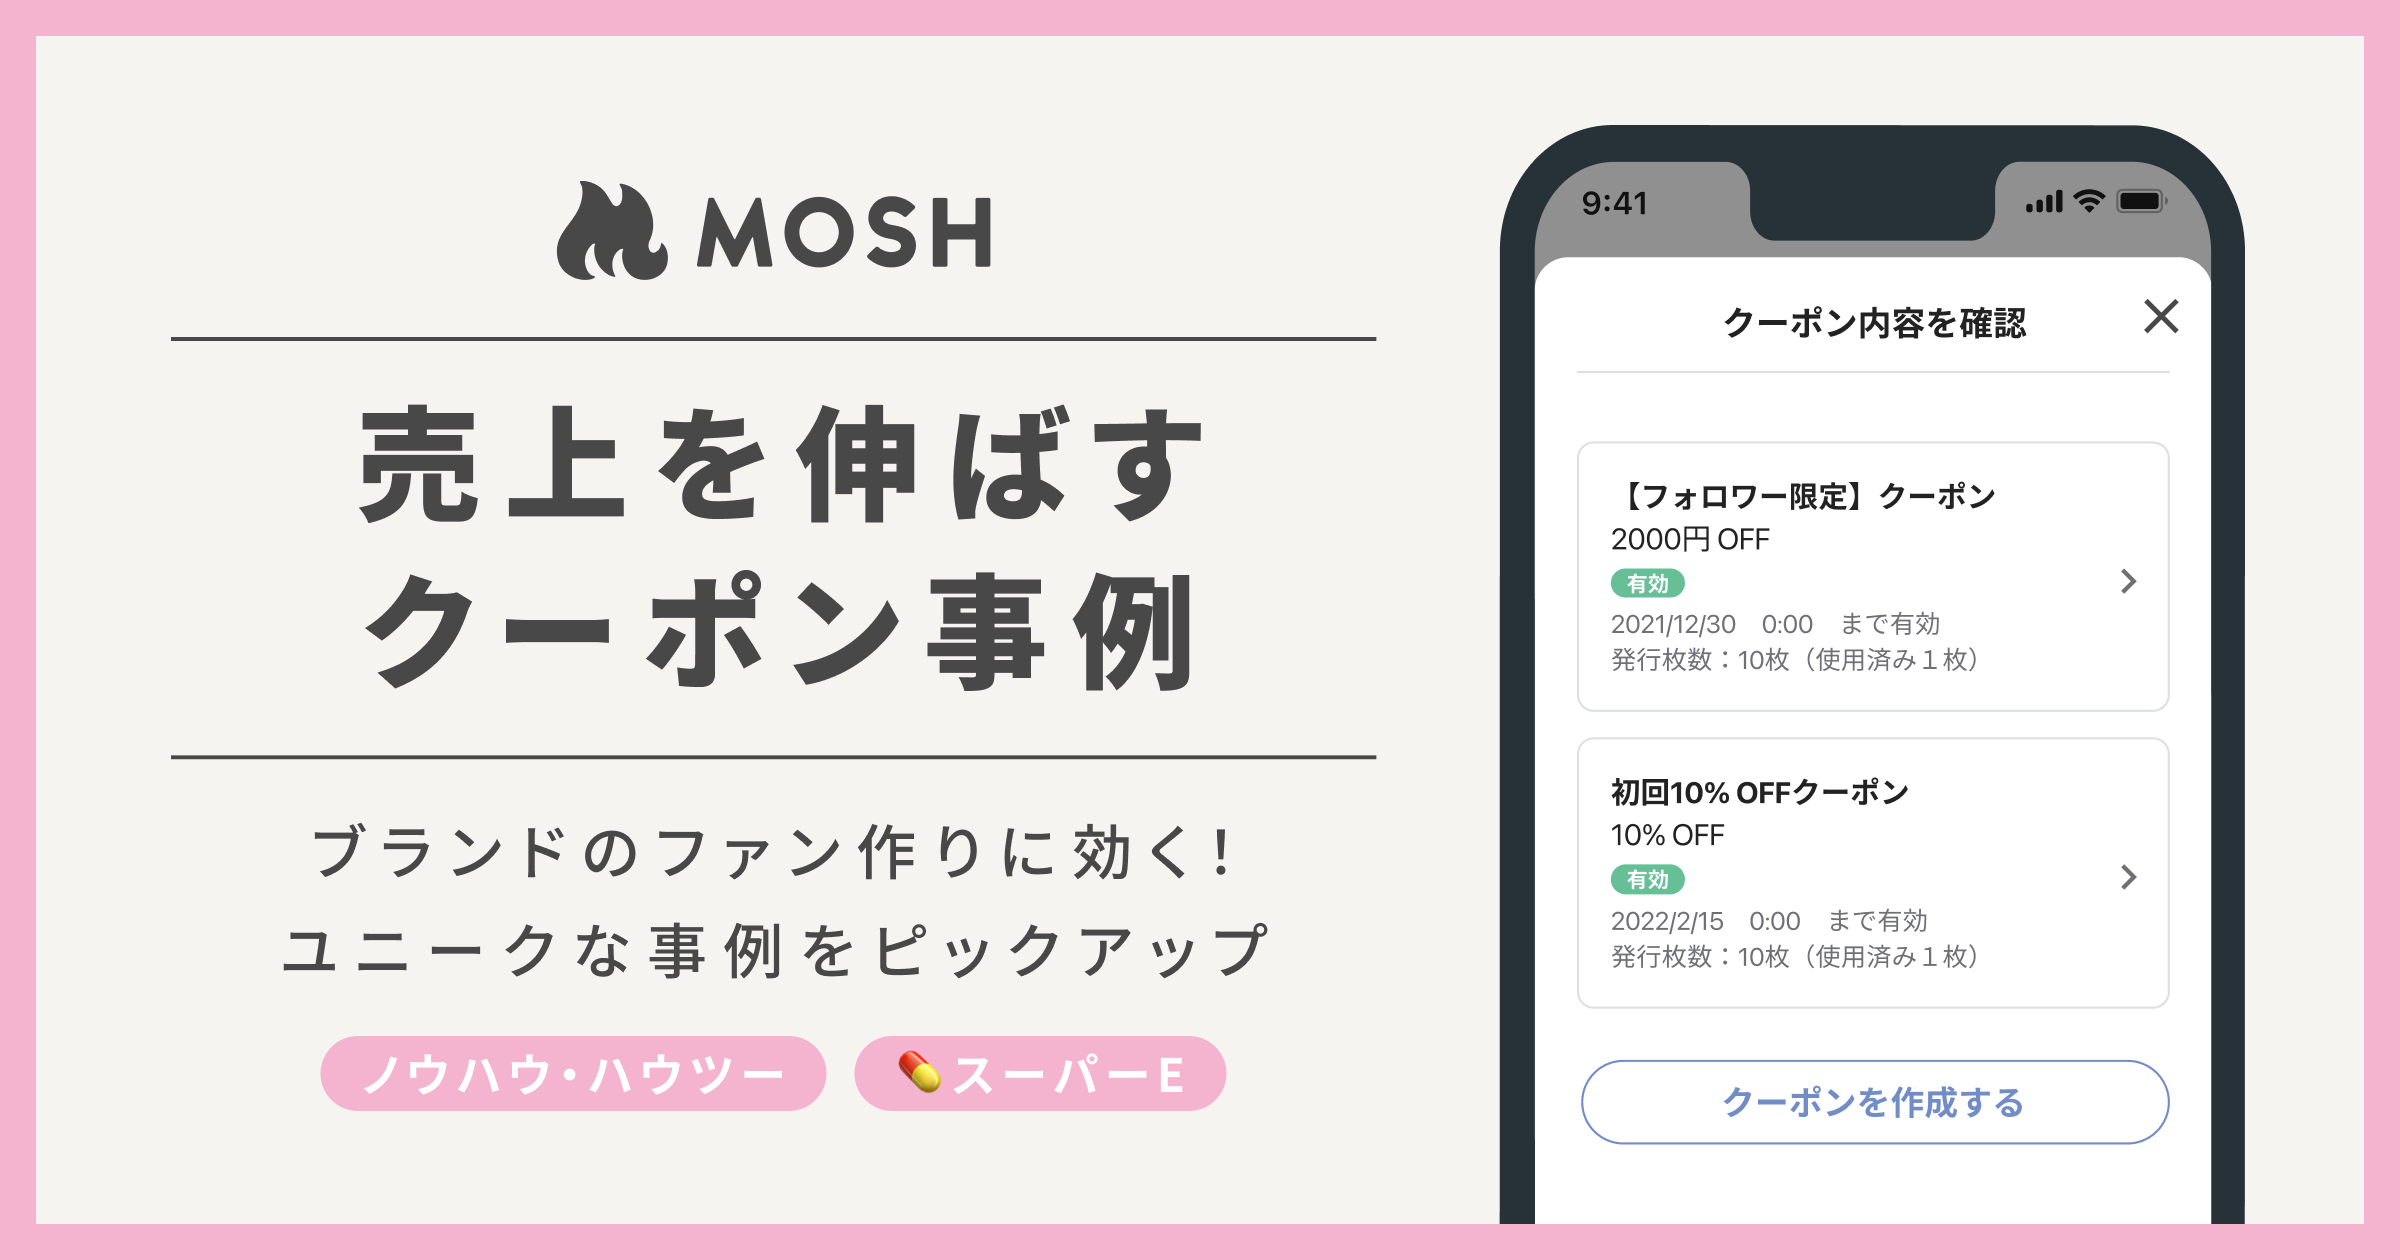 入会数が2倍以上伸びた事例も！ブランドのファンづくりに効く、MOSHクリエイターのユニークなクーポン活用法 | MOSH Magazine